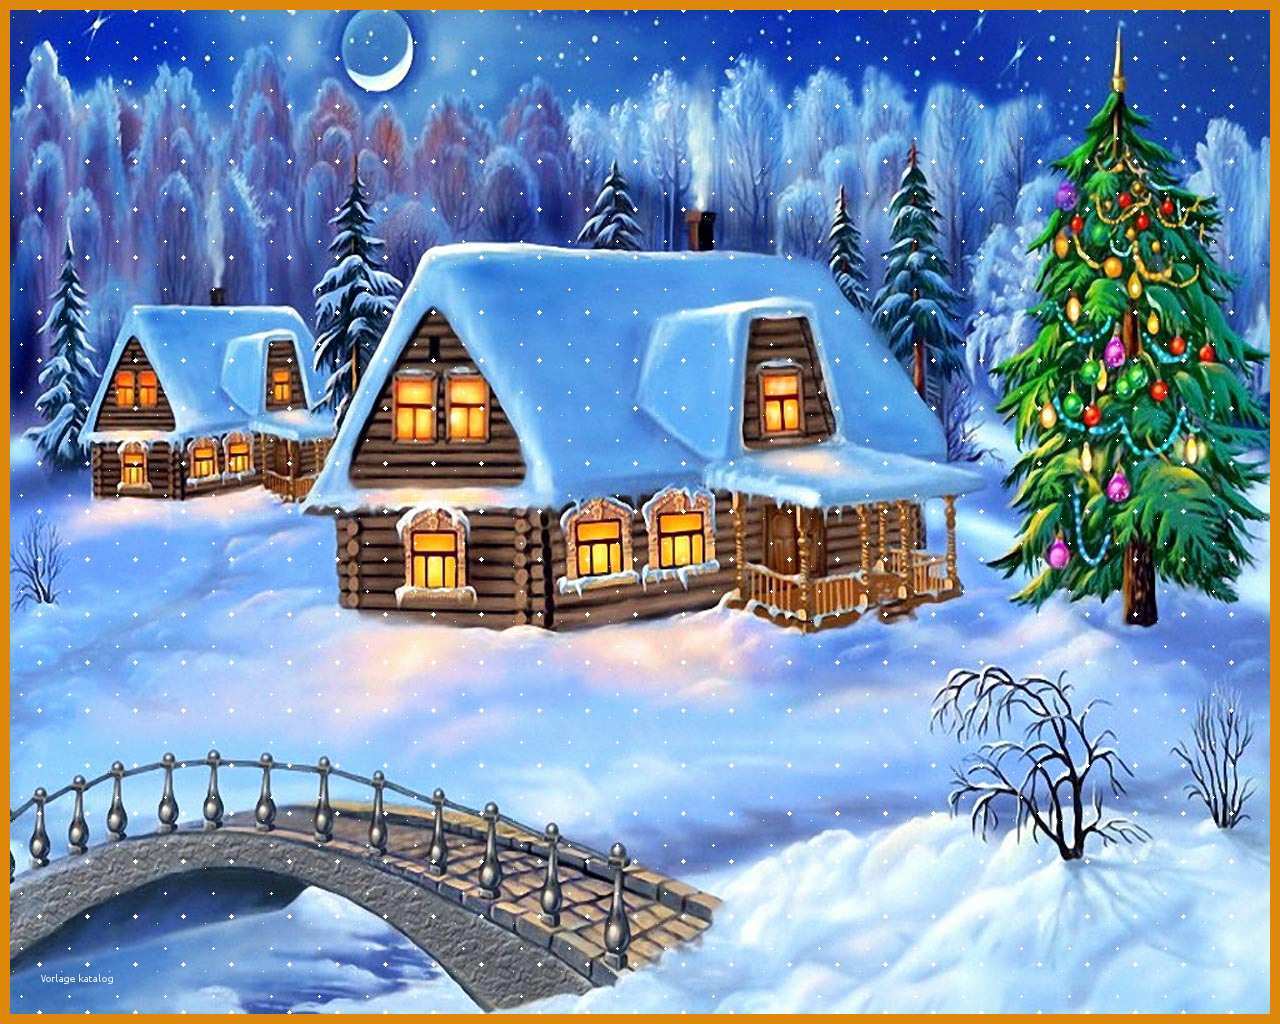 Tolle Weihnachtshintergrundbilder Zum Herunterladen Innen Word 803820